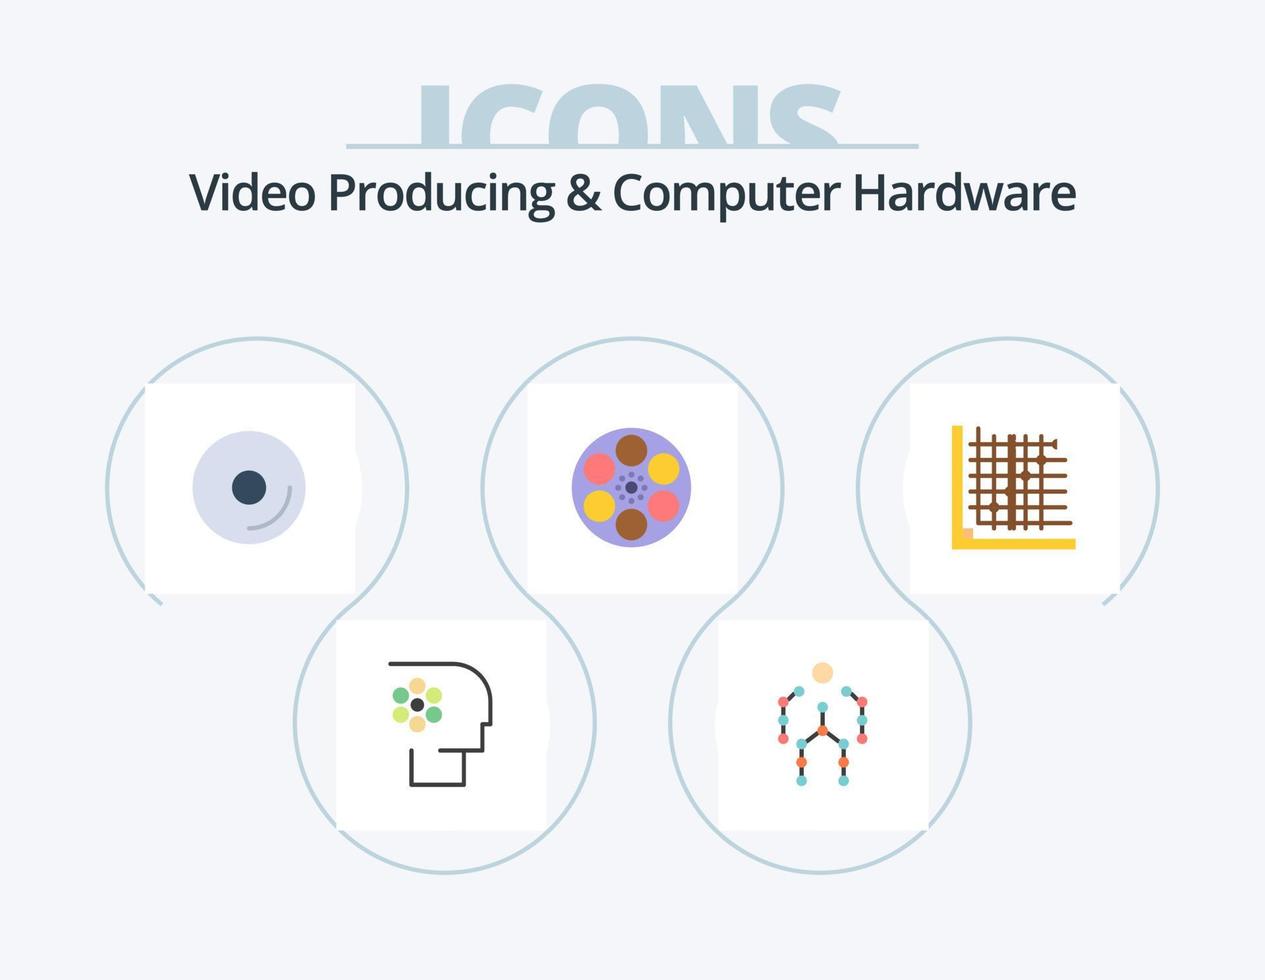 producción de video y hardware de computadora paquete de iconos planos 5 diseño de iconos. tanque. película. humano. película. medios de comunicación vector